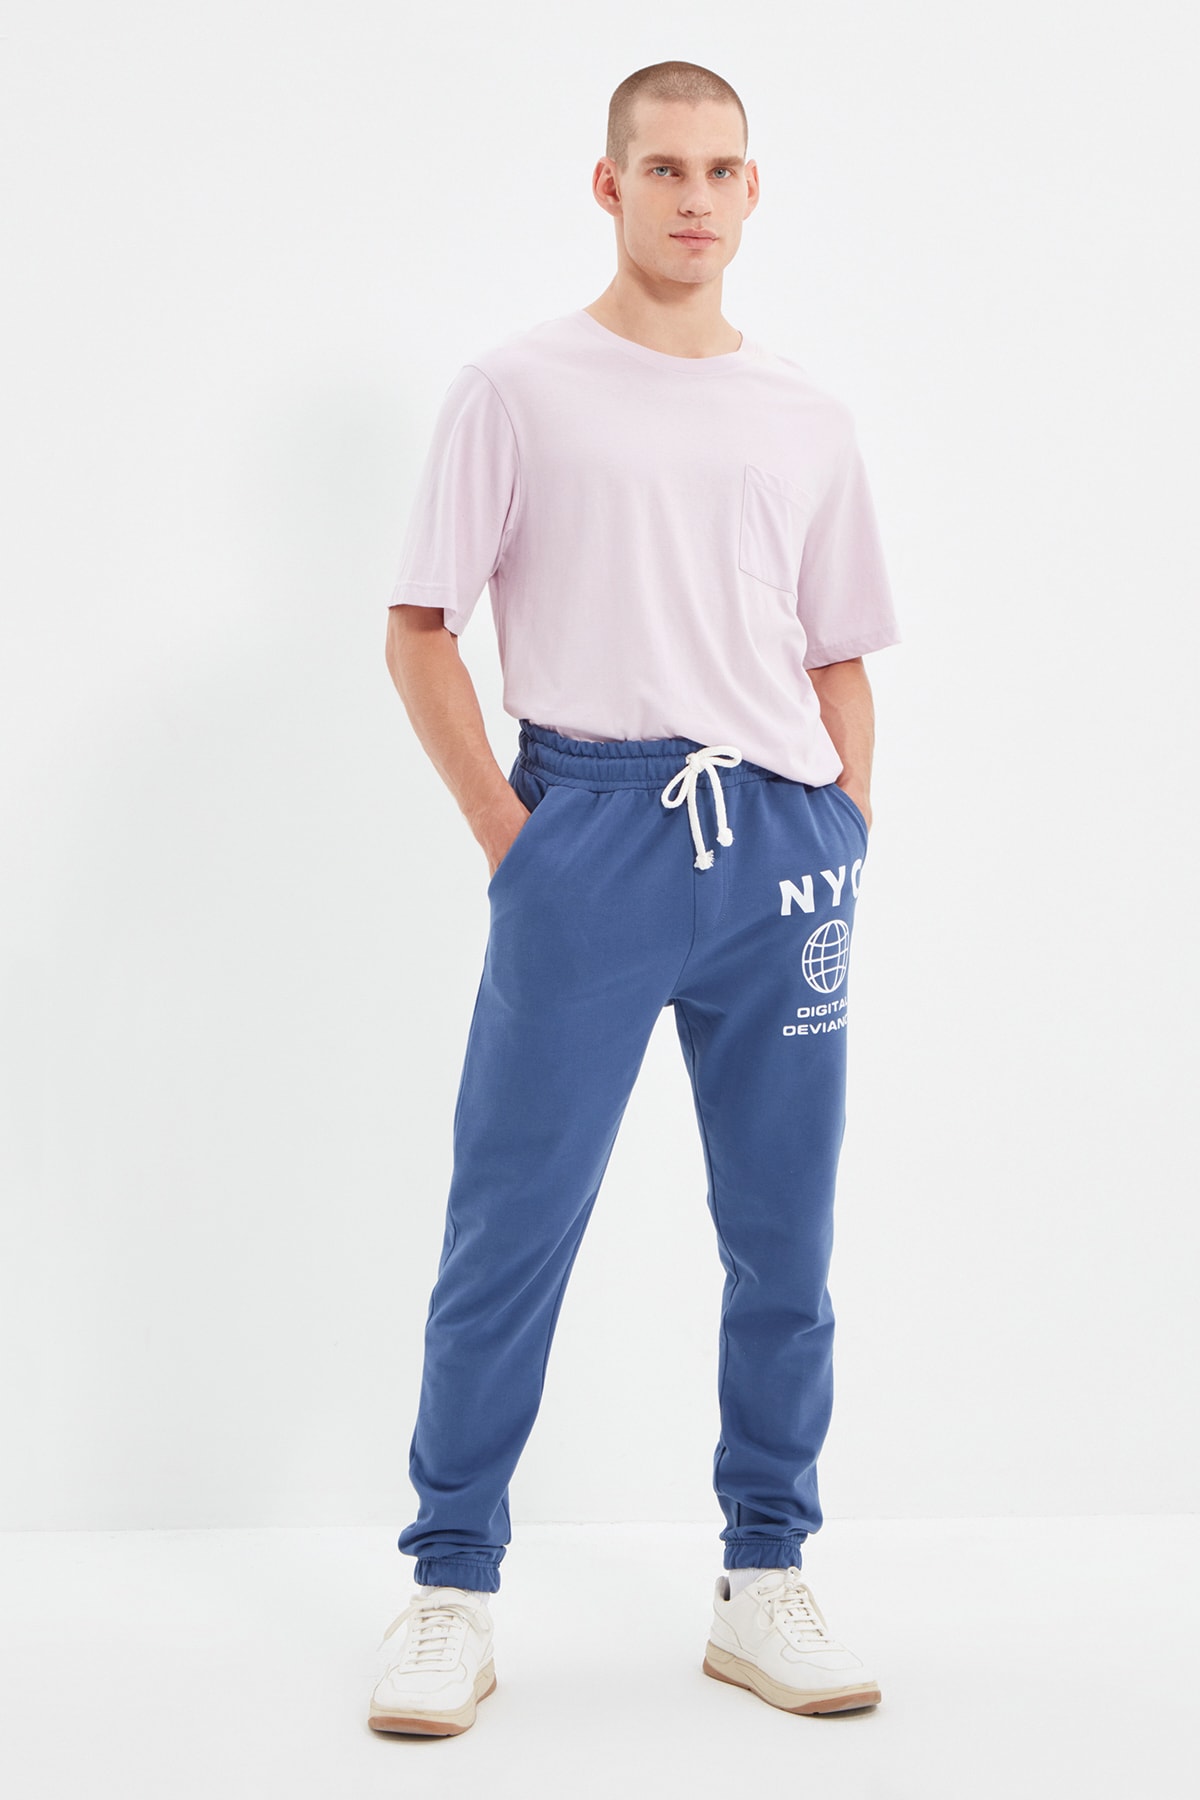 Trendyol Indigo Men's Regular Fit Elastic Leg Printed Sweatpants